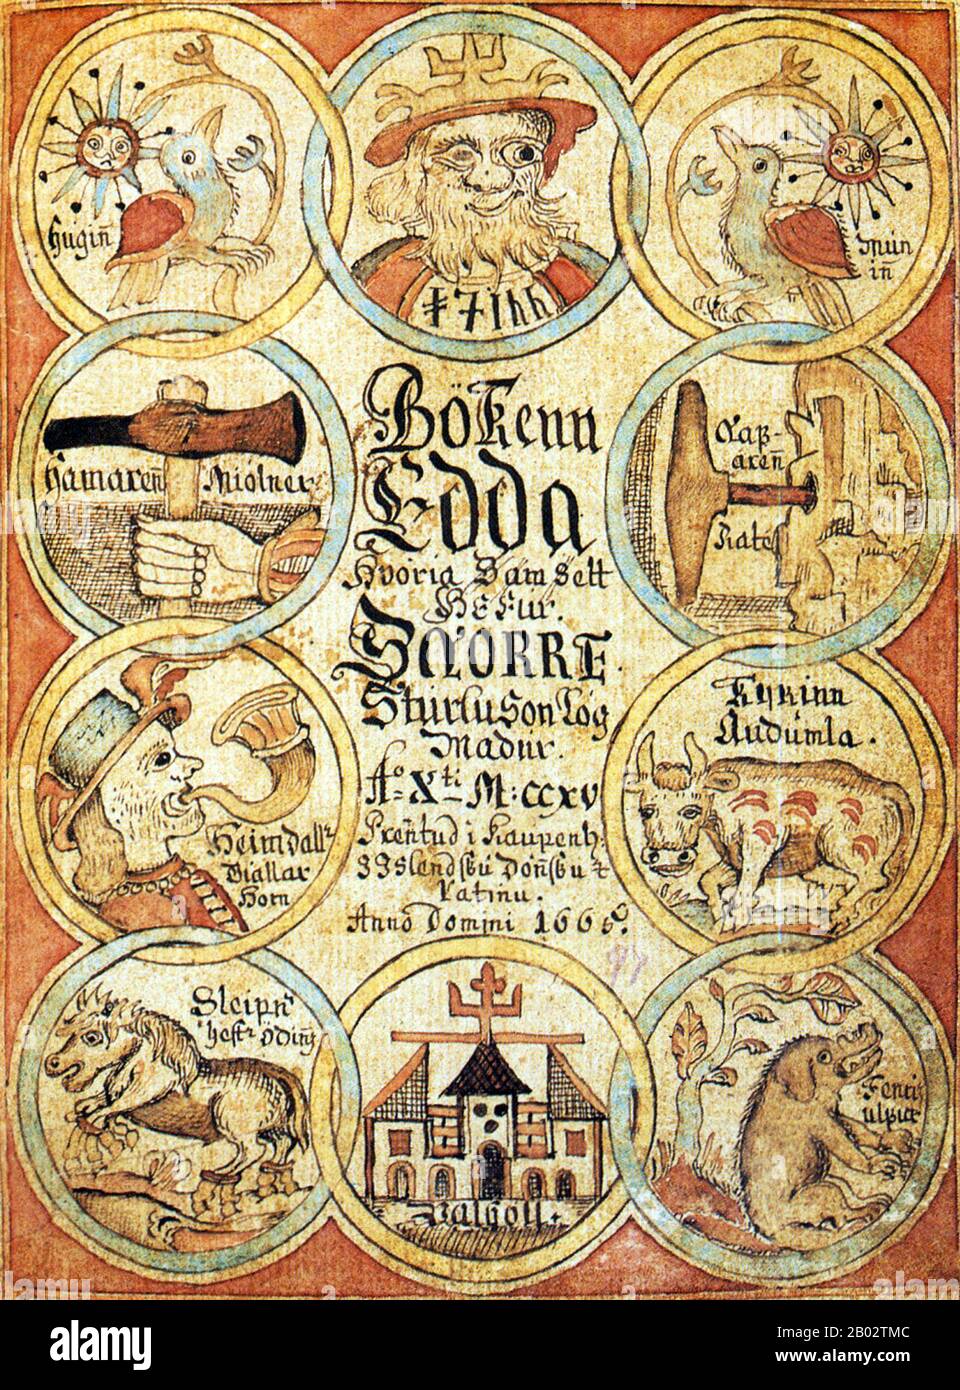 Die Poetische Edda ist eine Sammlung altnordischer Gedichte, die vor allem im isländischen mittelalterlichen Manuskript "Codex-Regius" aufbewahrt werden. Zusammen mit Snorri Sturlusons Prosa Edda ist die Poetische Edda die wichtigste erweiterte Quelle zur nordischen Mythenwelt und zu den heroischen Legenden der Germanen. Stockfoto